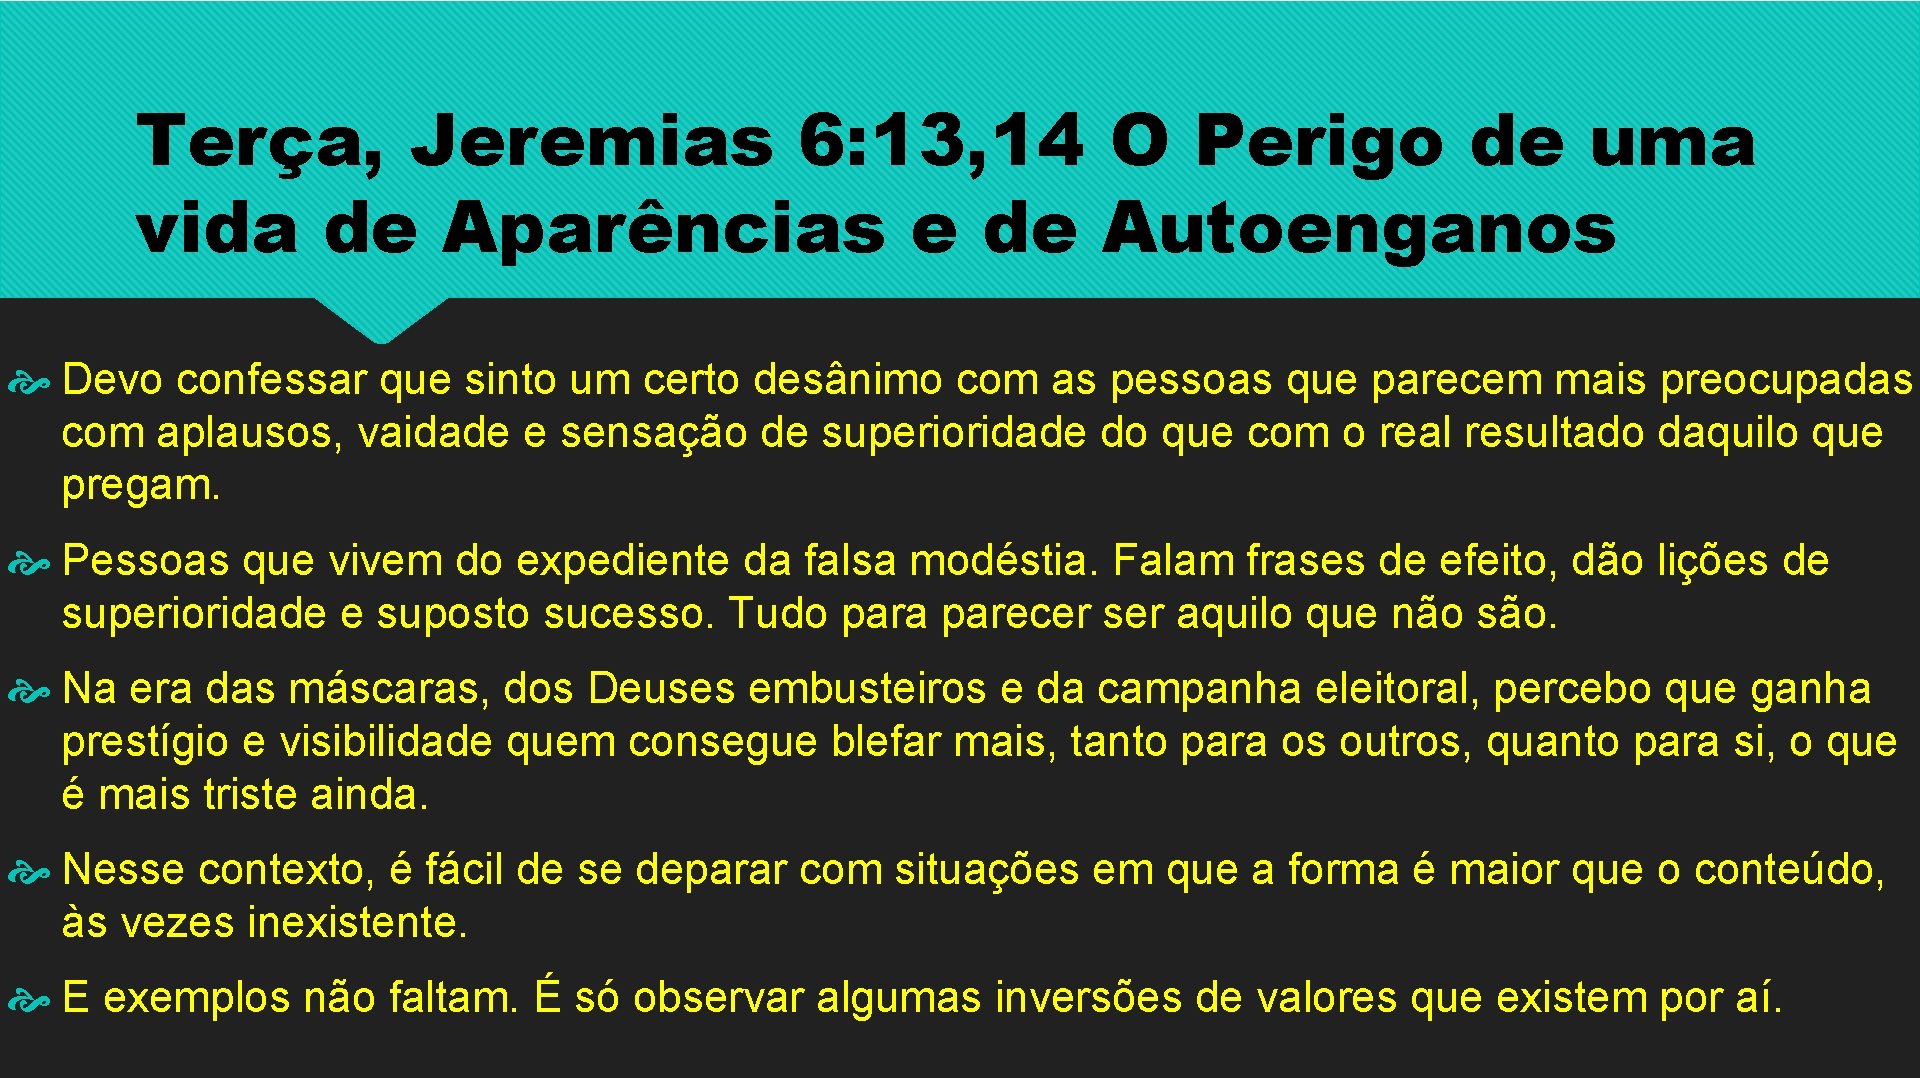 Terça, Jeremias 6: 13, 14 O Perigo de uma vida de Aparências e de